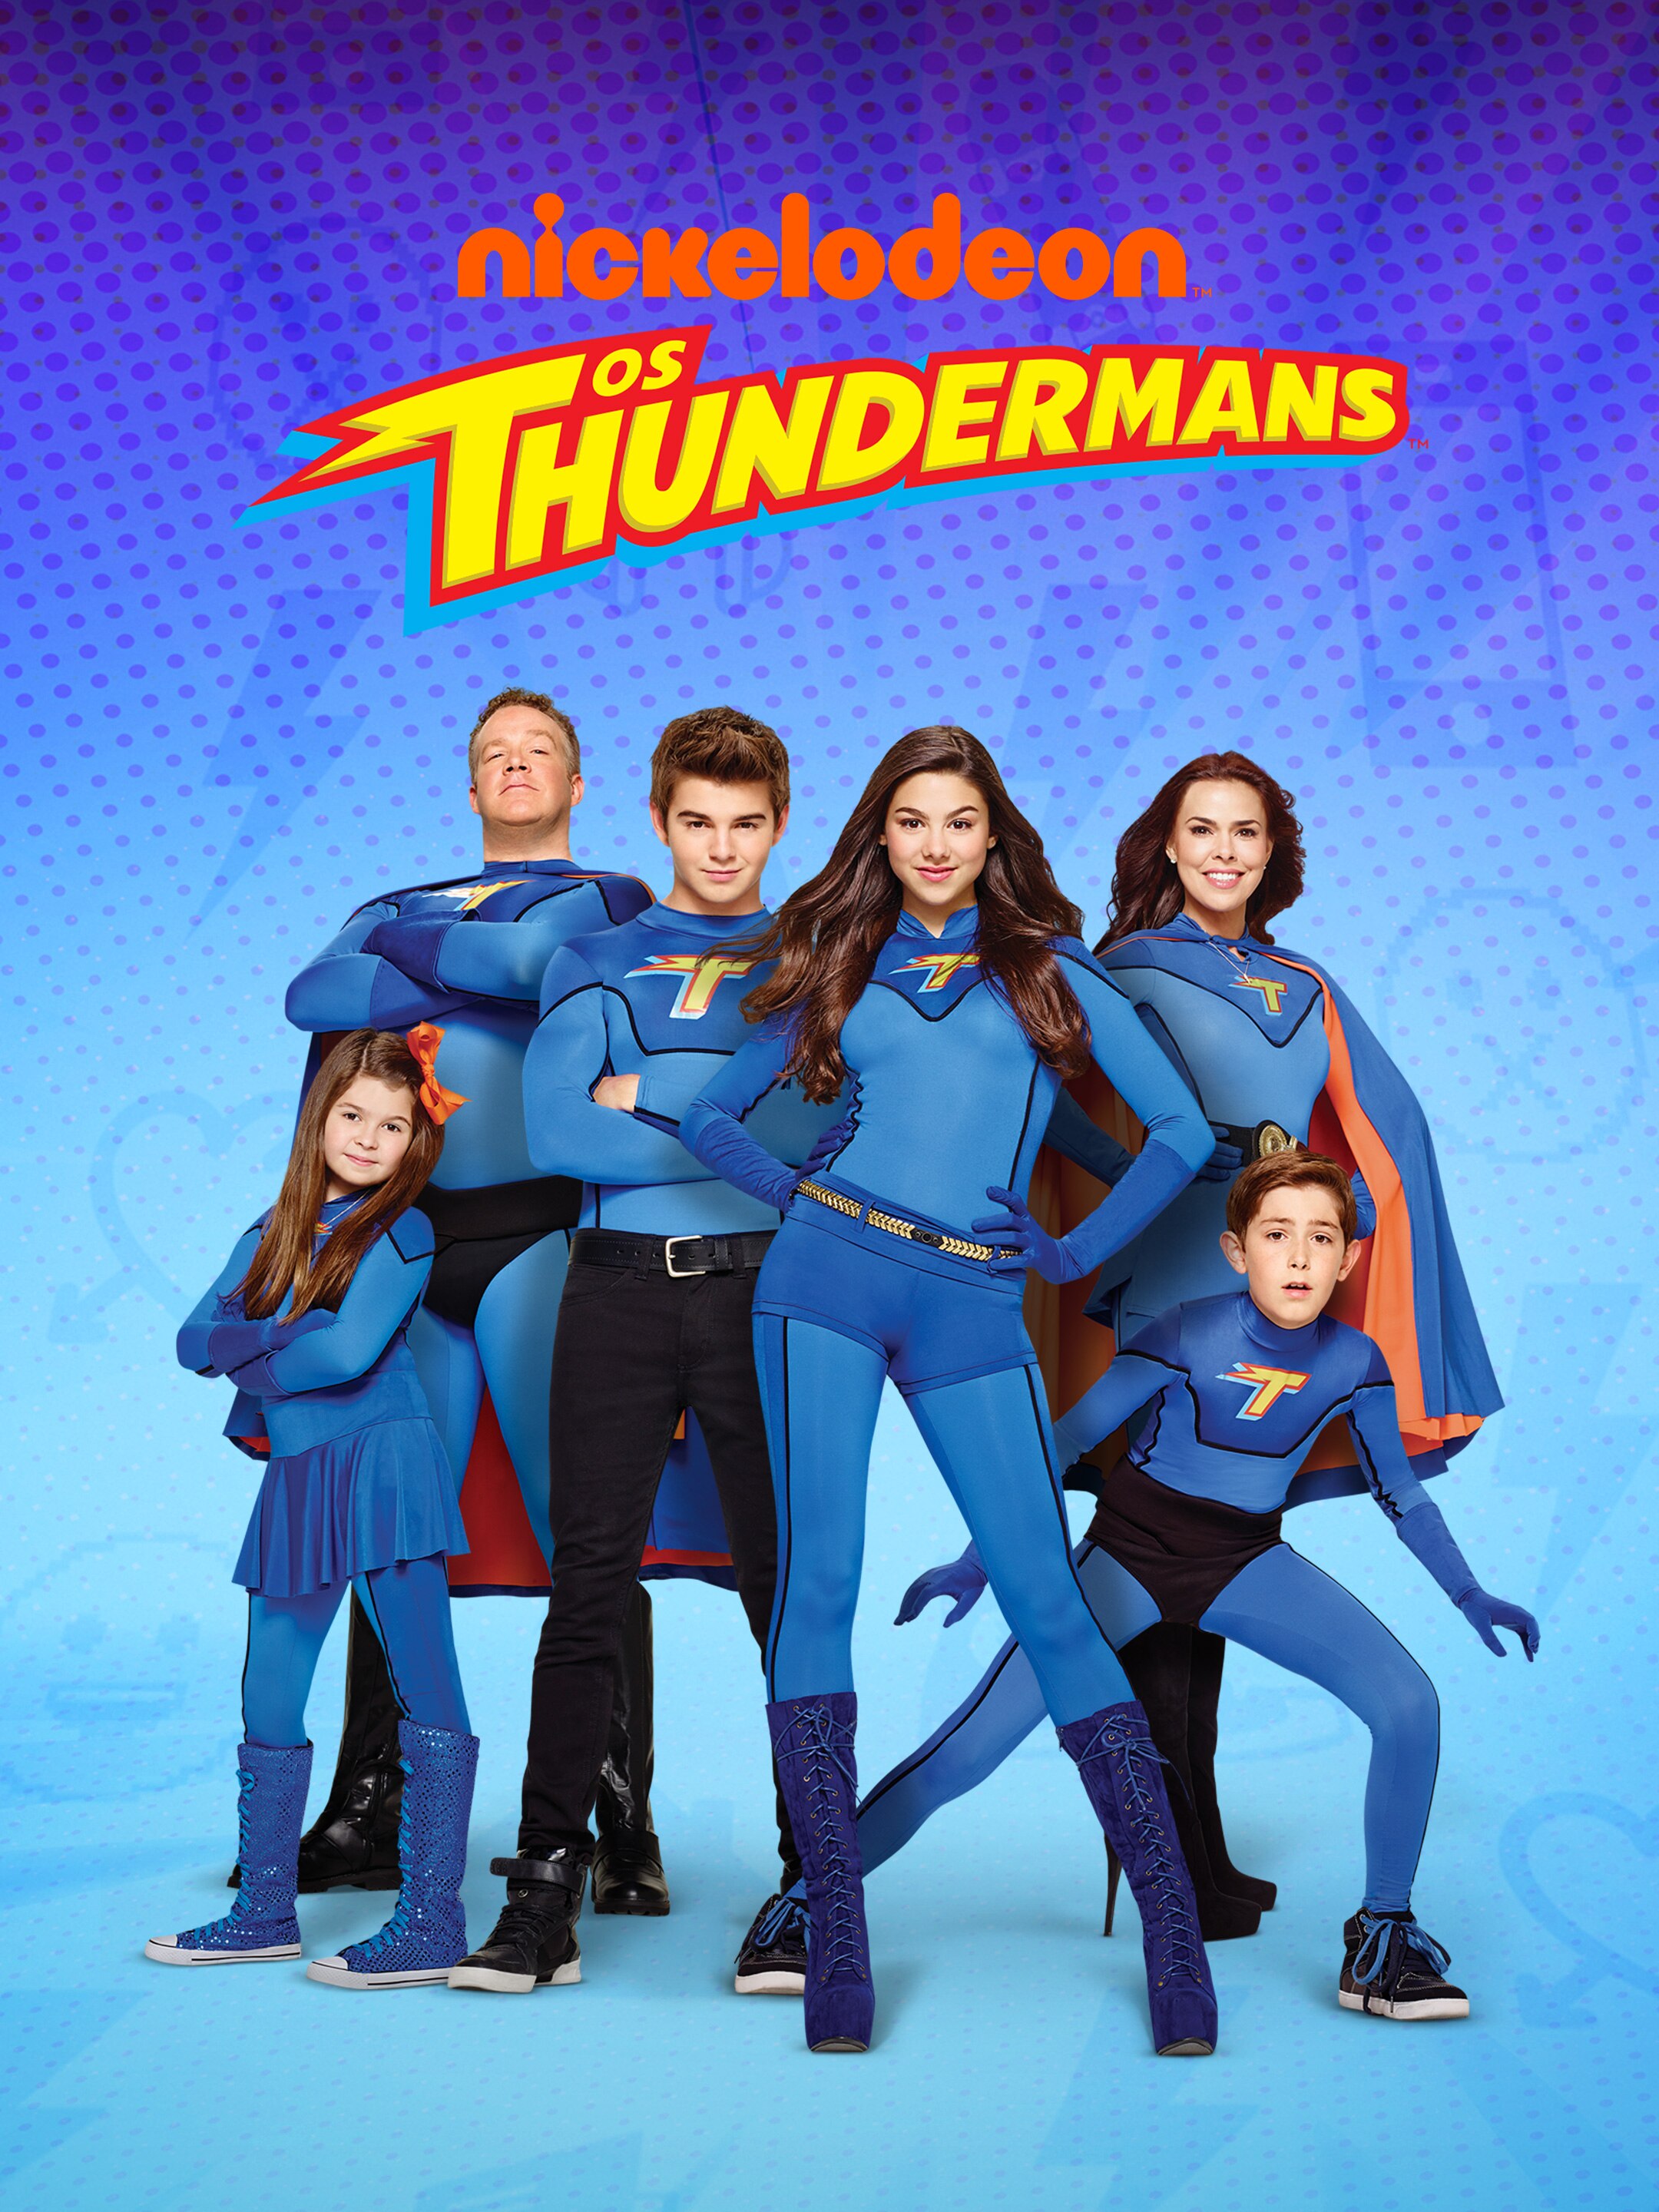 Sucesso no SBT, série The Thundermans ganha filme com elenco original -  Tangerina